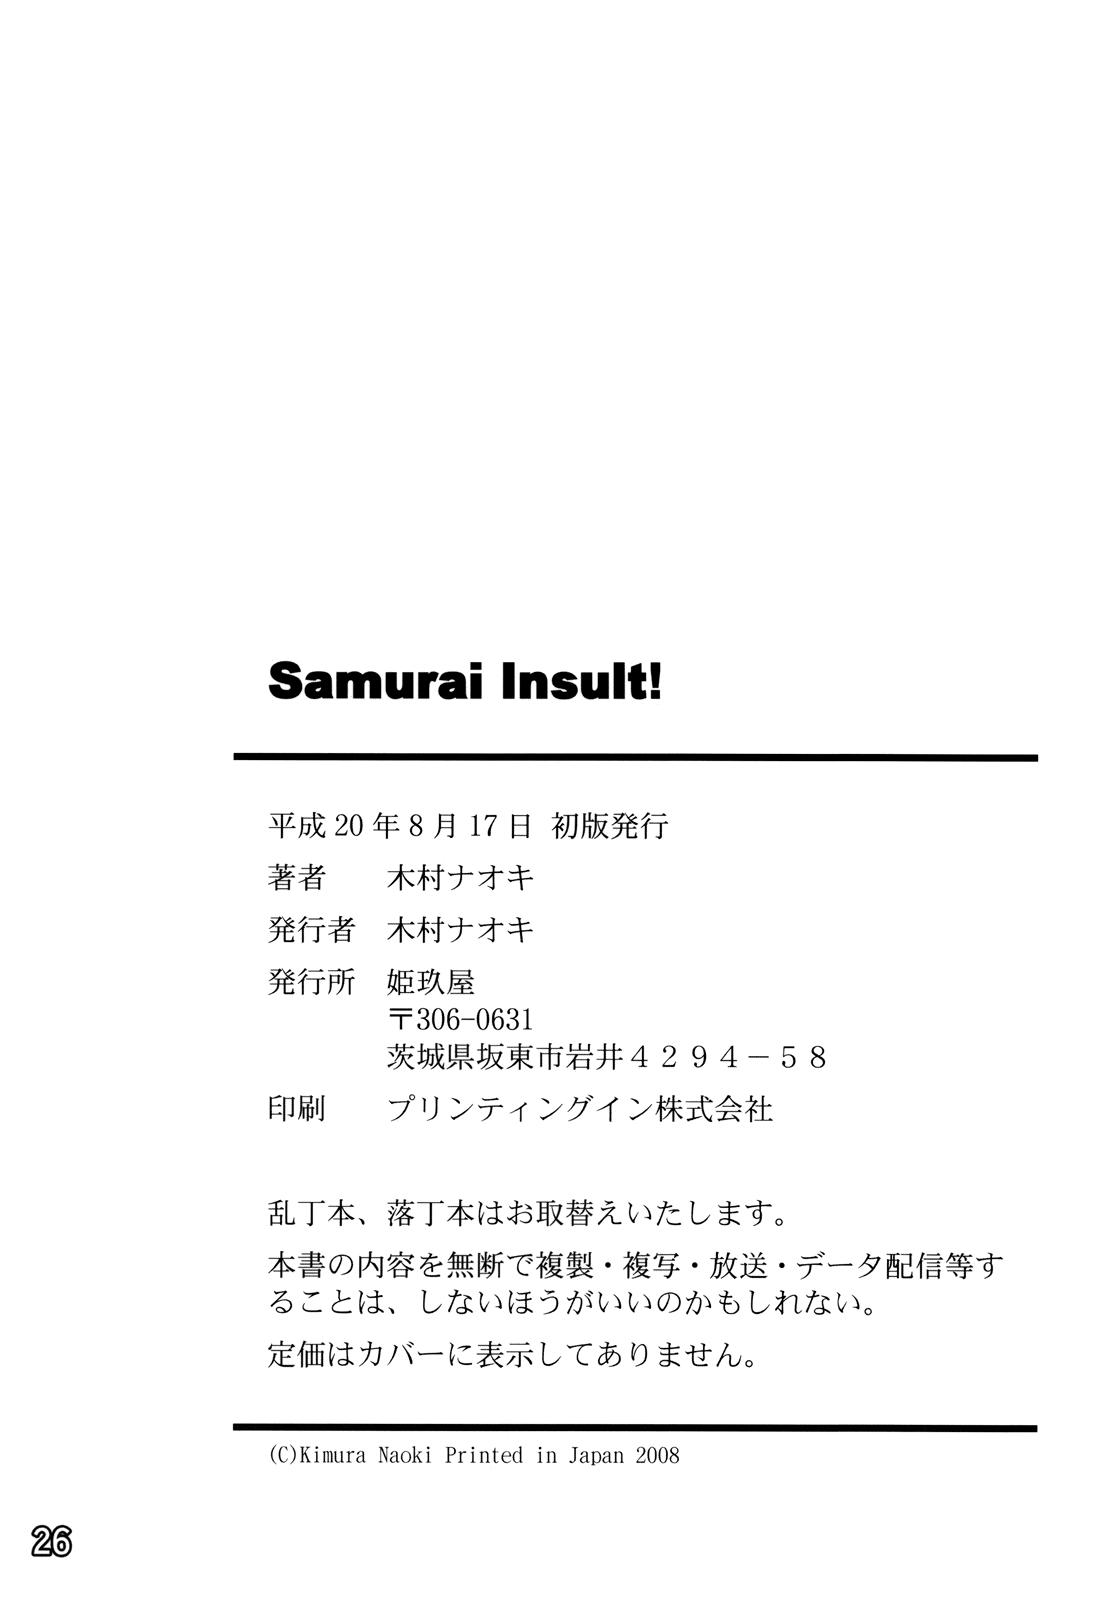 SAMURAI INSULT! 24